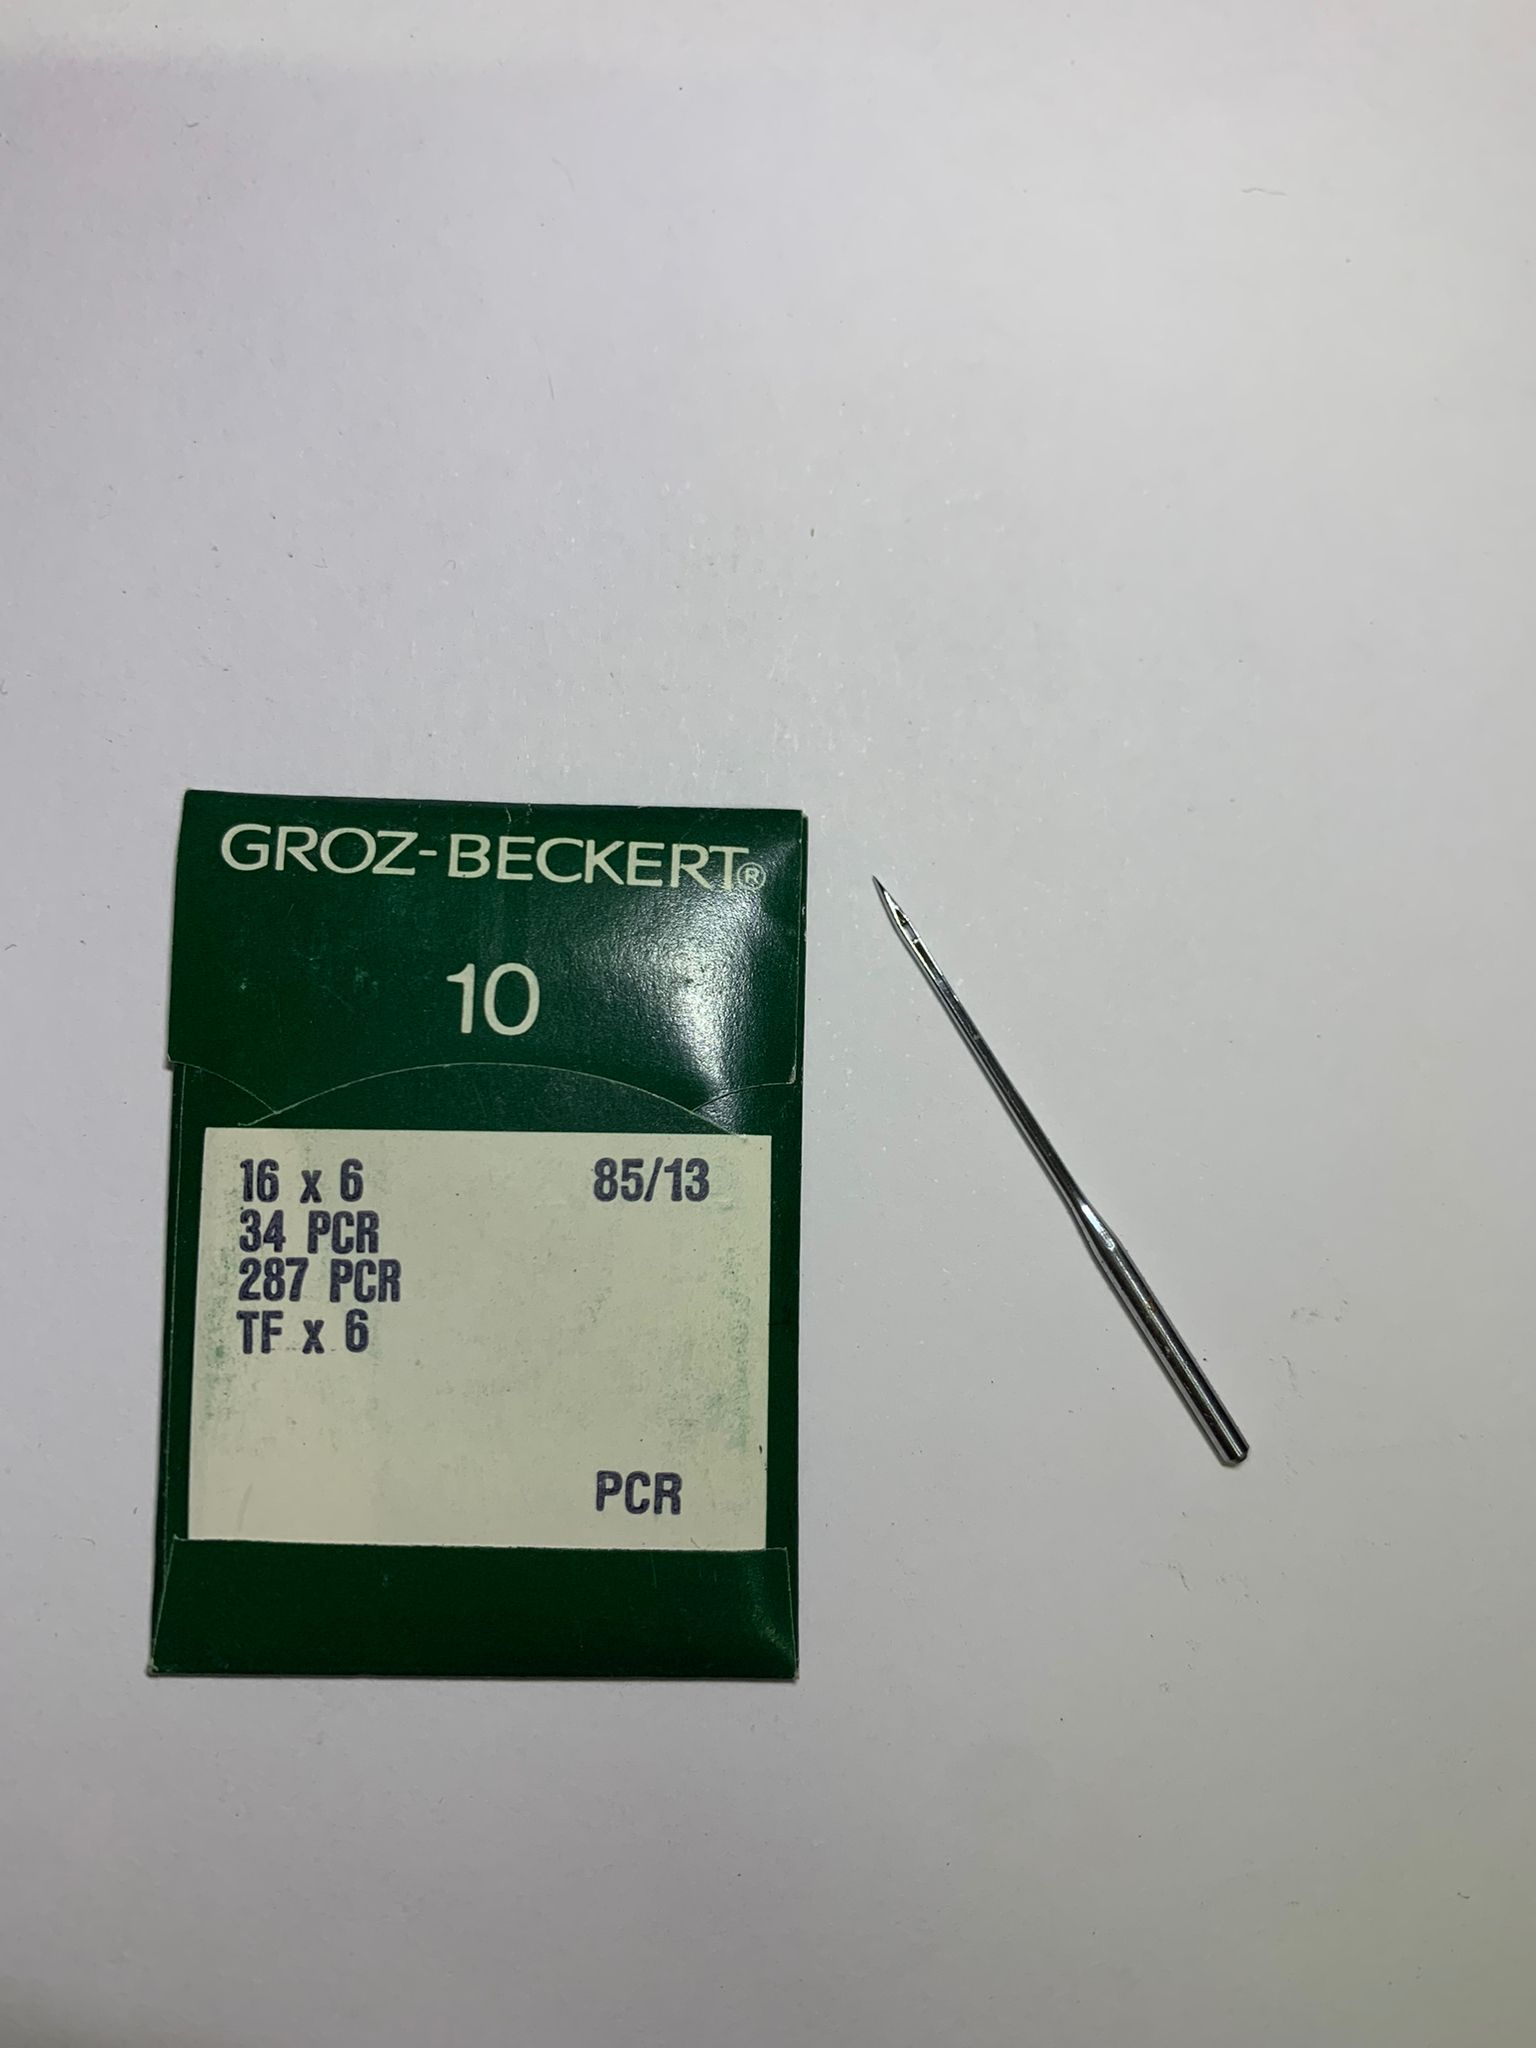 GROZ-BECKERT - 85/13 16x6